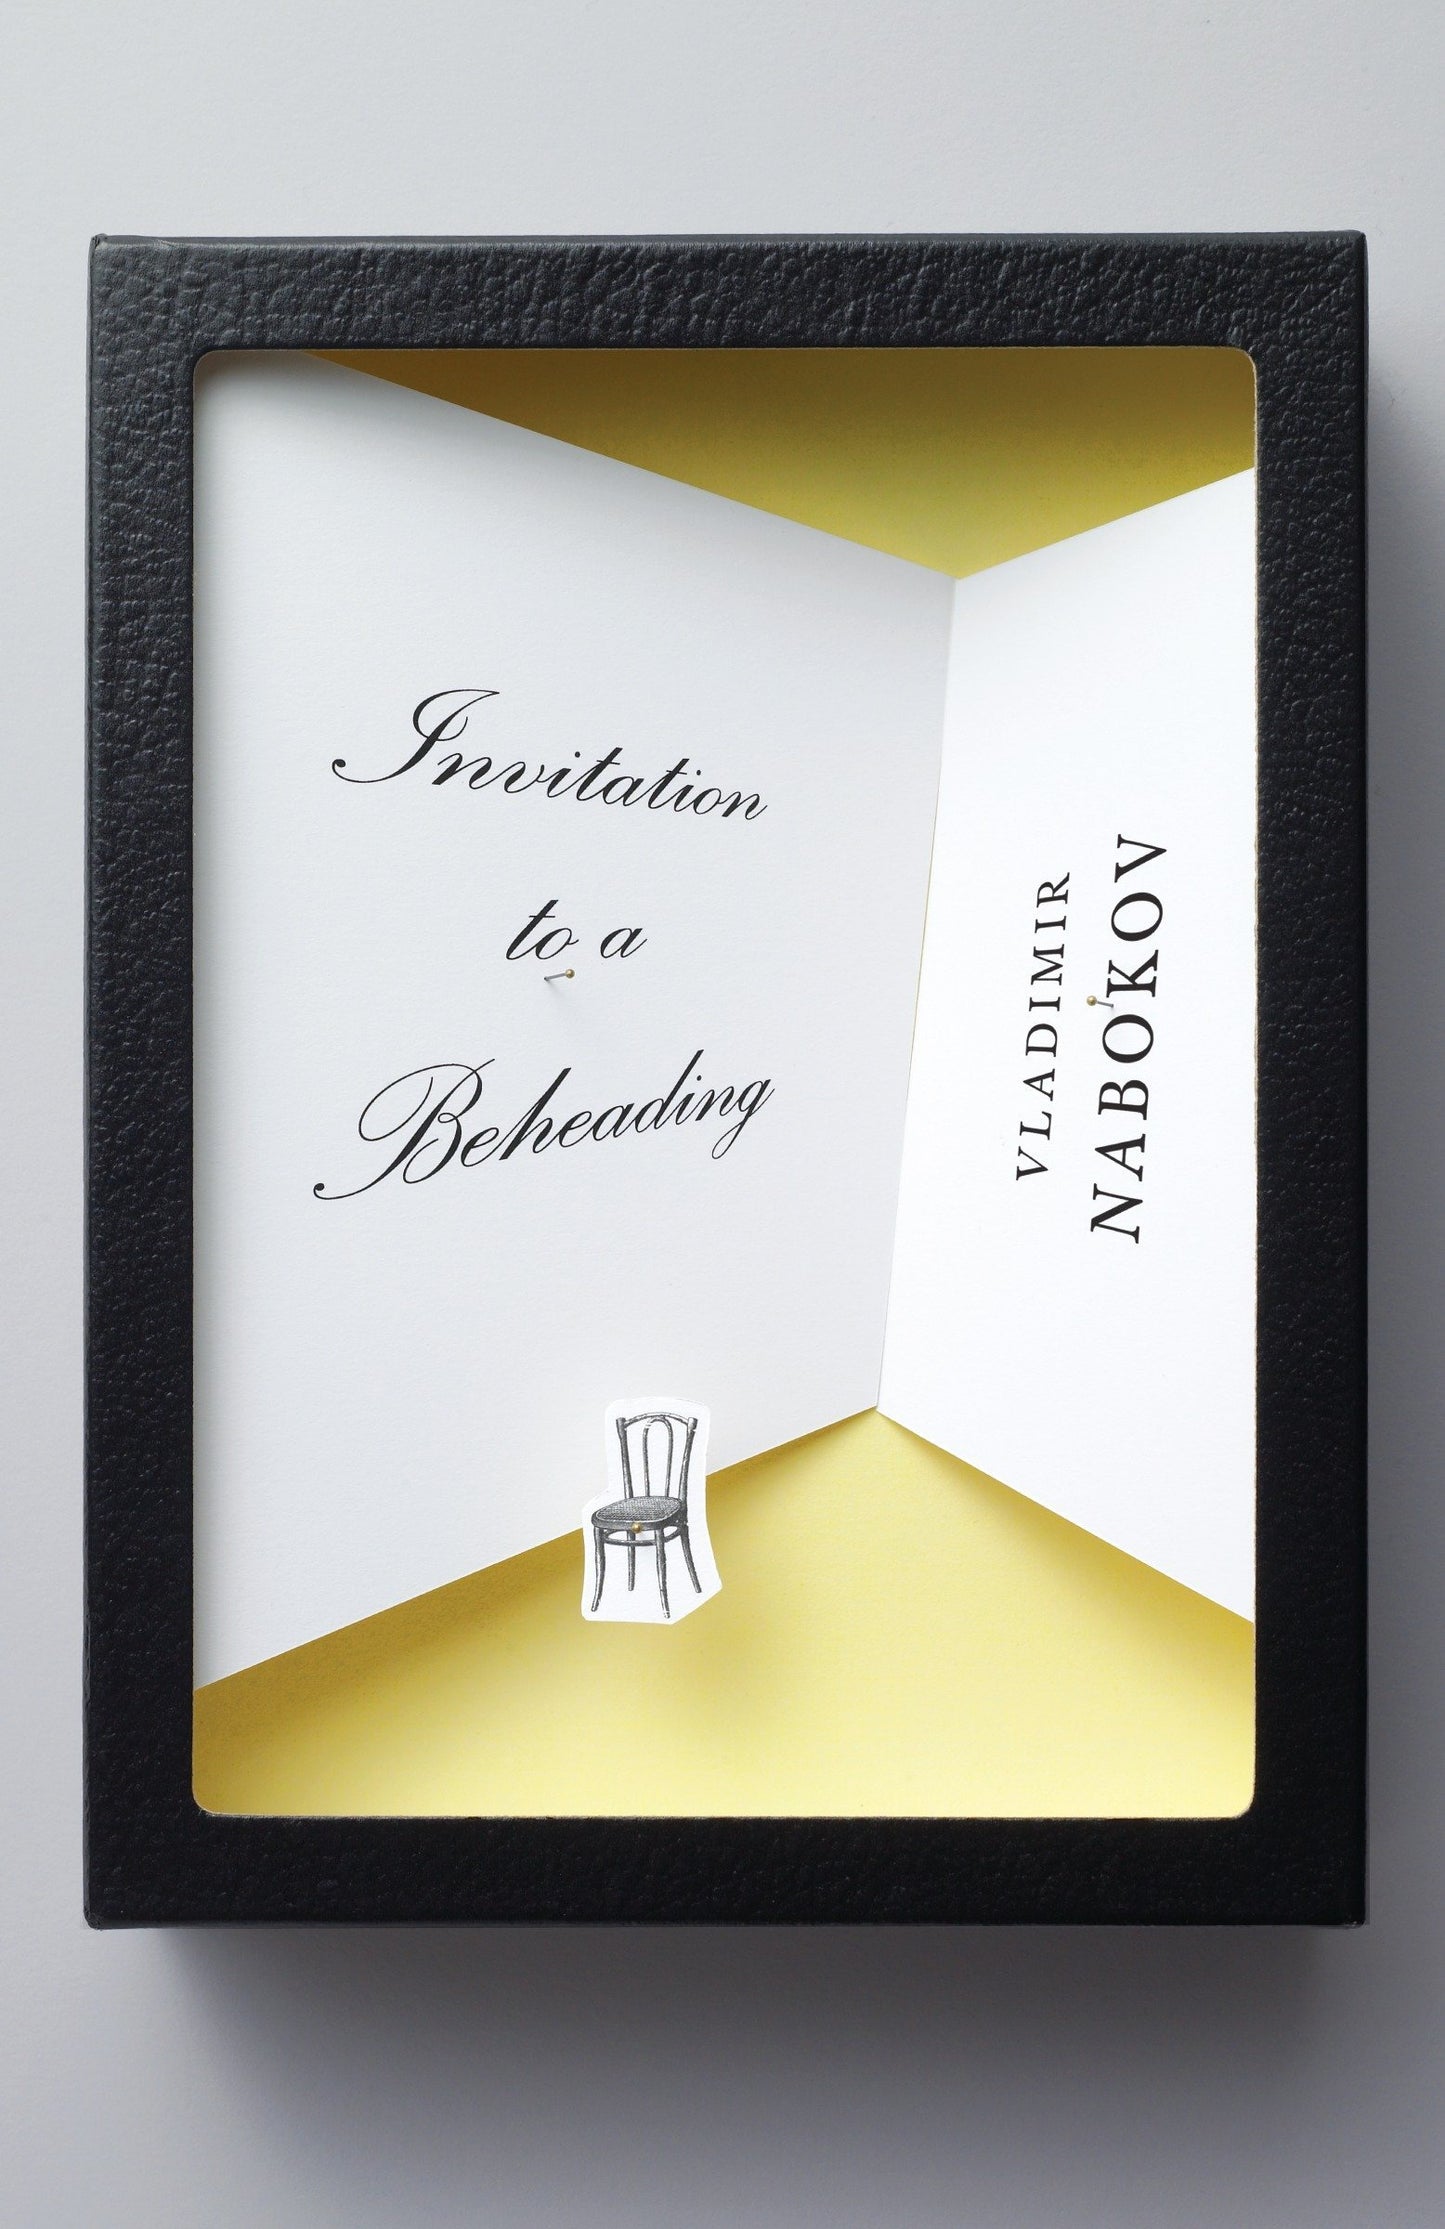 Invitation to a Beheading, by Vladimir Nabokov